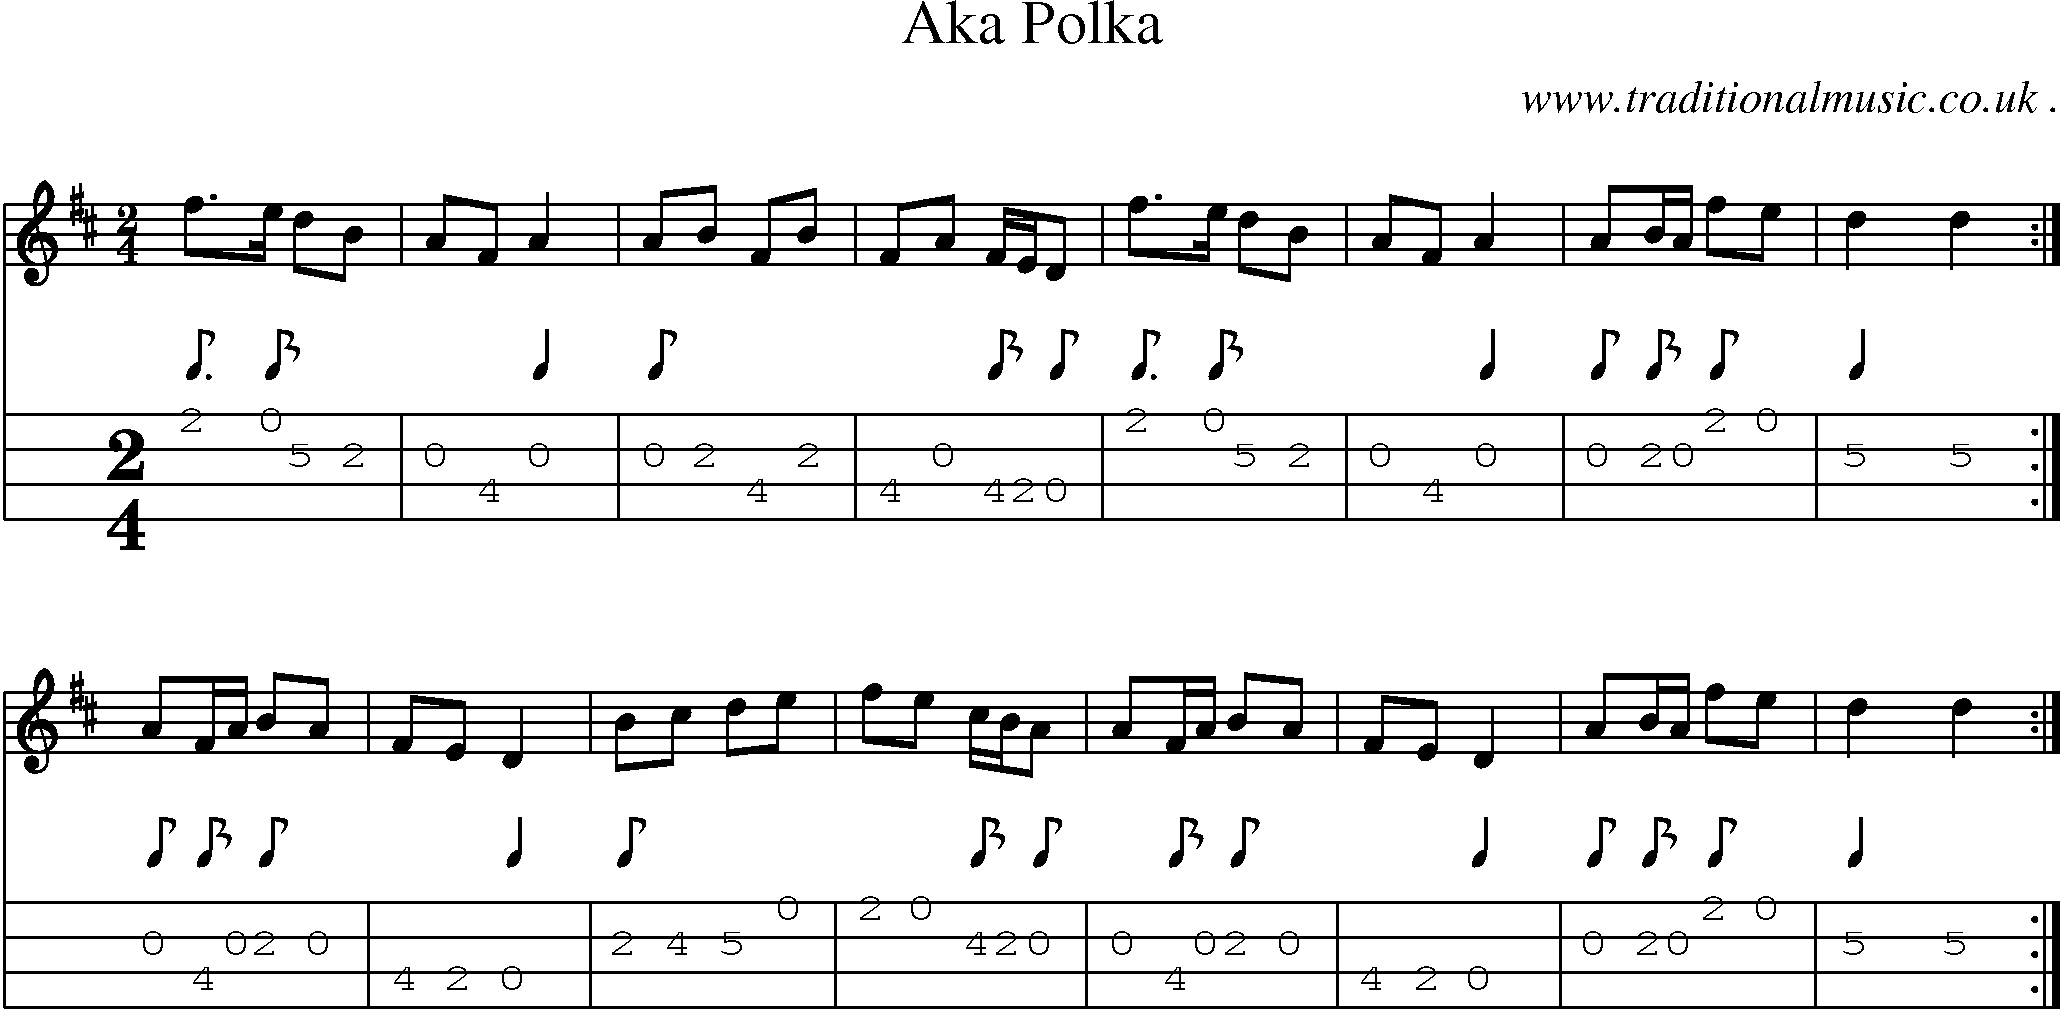 Sheet-Music and Mandolin Tabs for Aka Polka